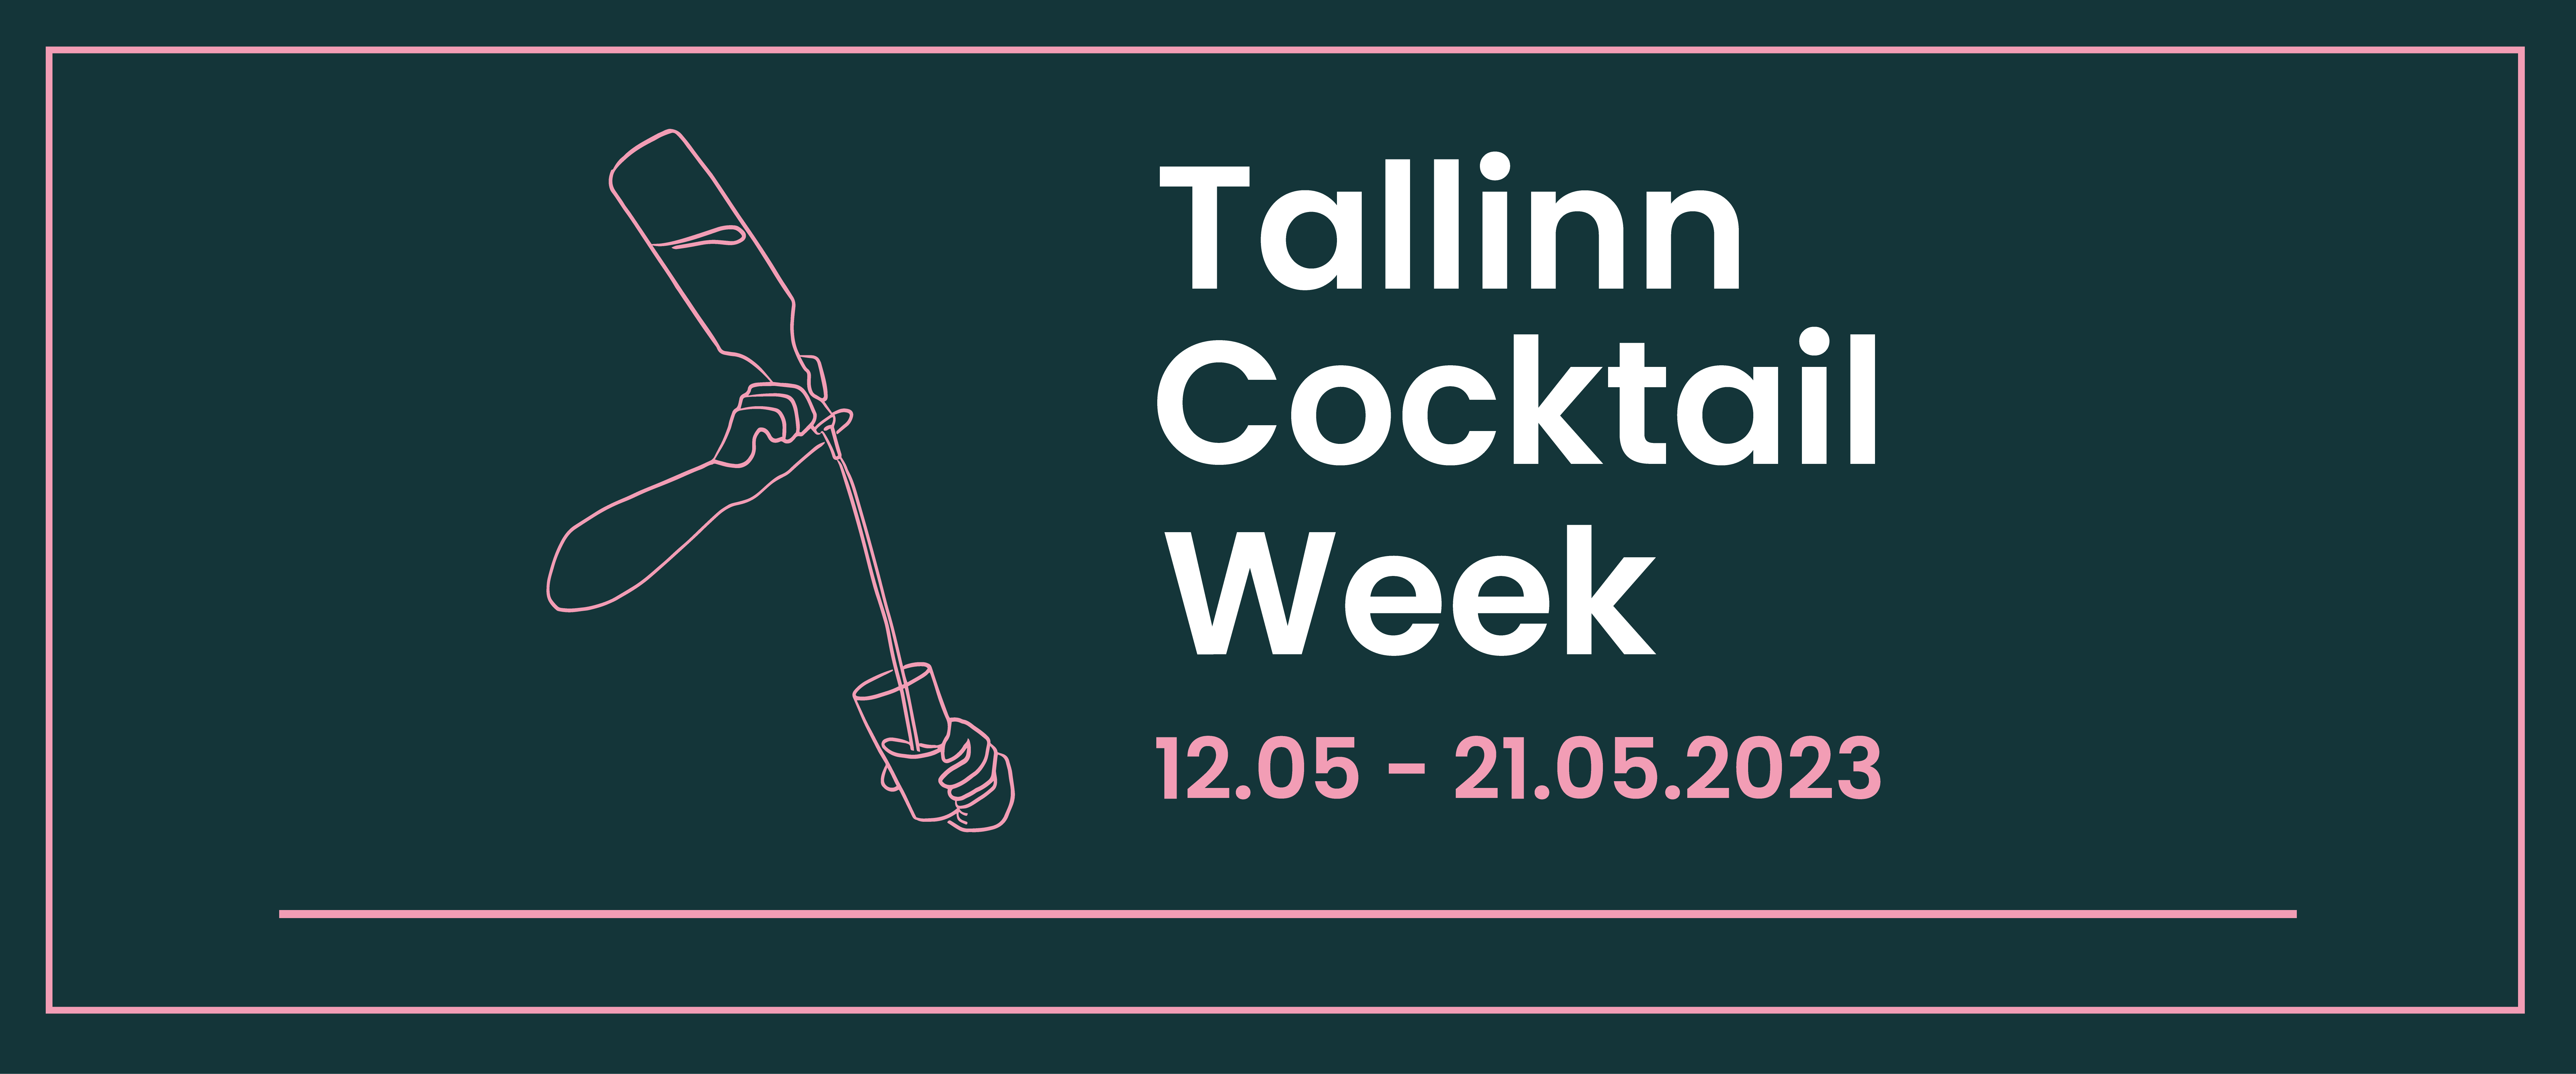 Tartu Cocktail Week parimad Tartu baarides ja restoranides käis suur melu 22.-30. septembrini, kui toimus Tartu Cocktail Week. Seekordne üritus […]